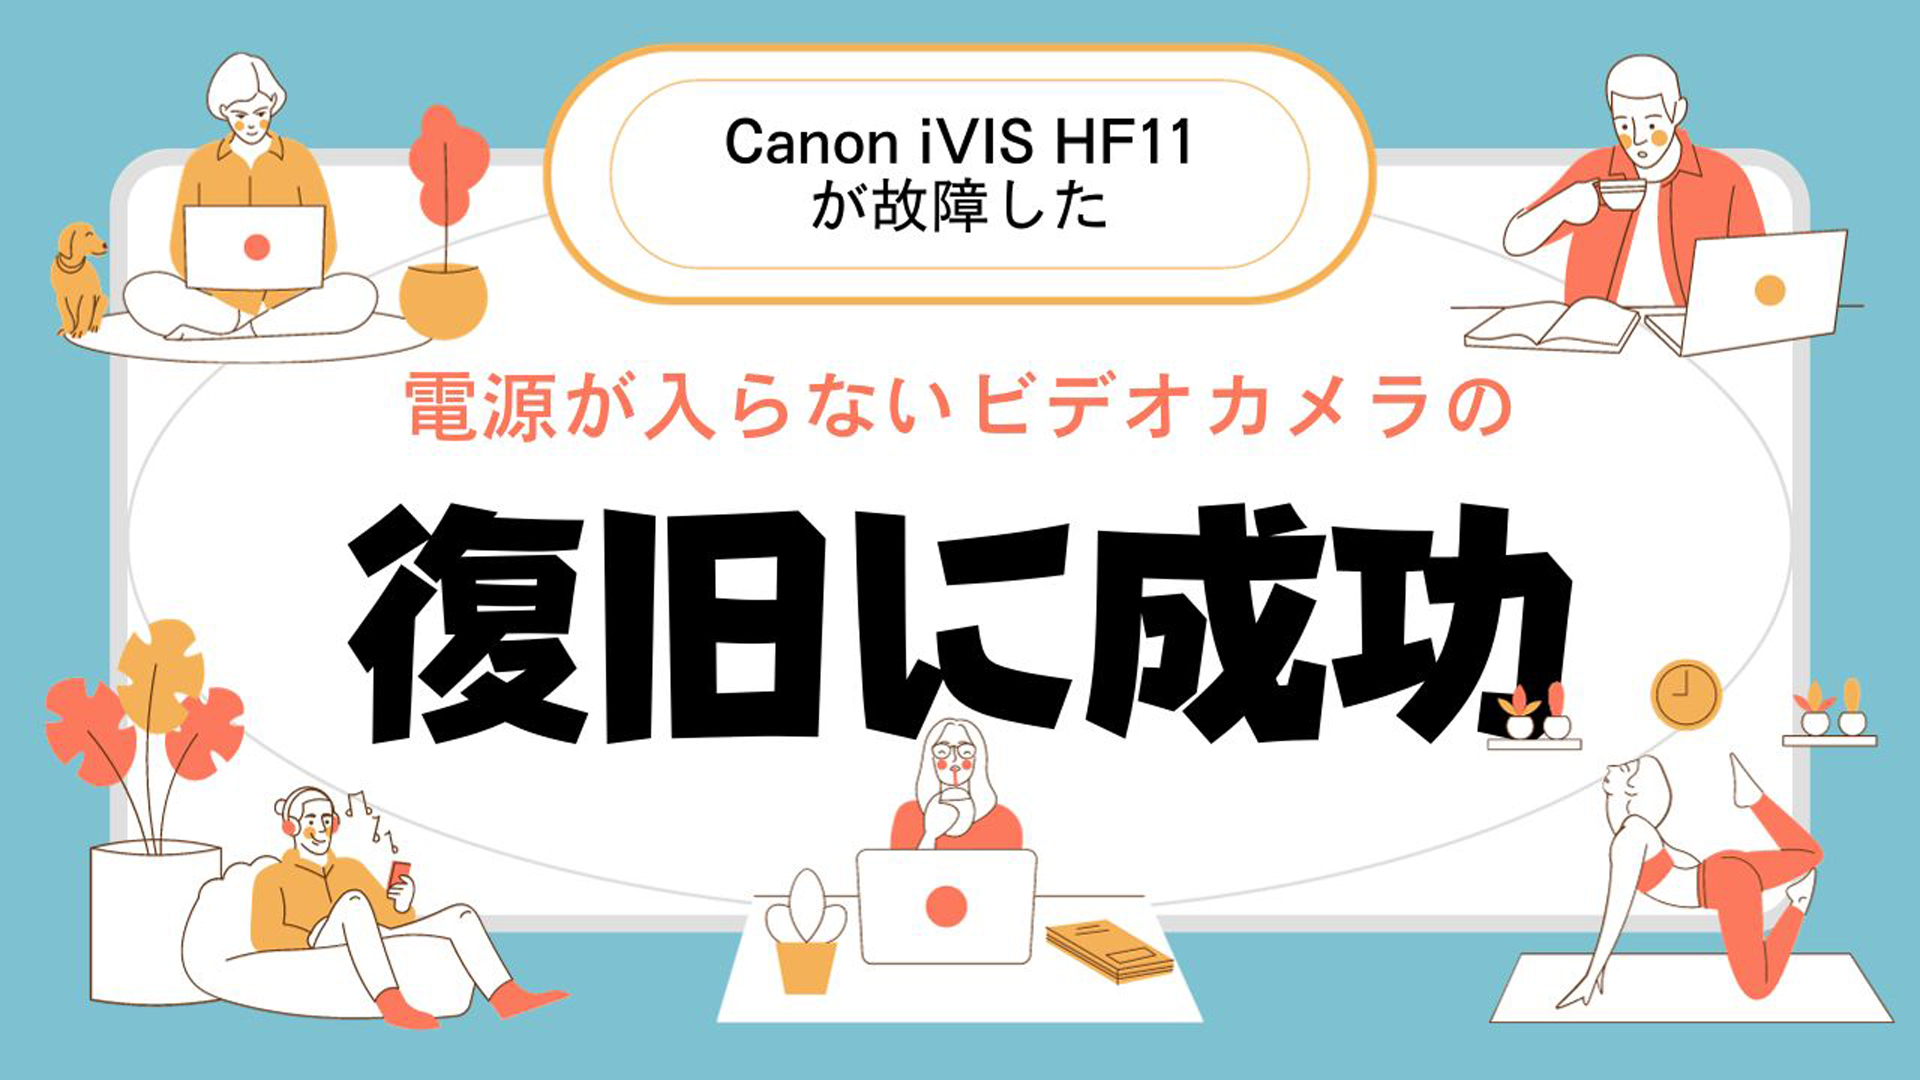 Canon iVIS HF11の電源故障から奇跡のデータ復旧成功事例！